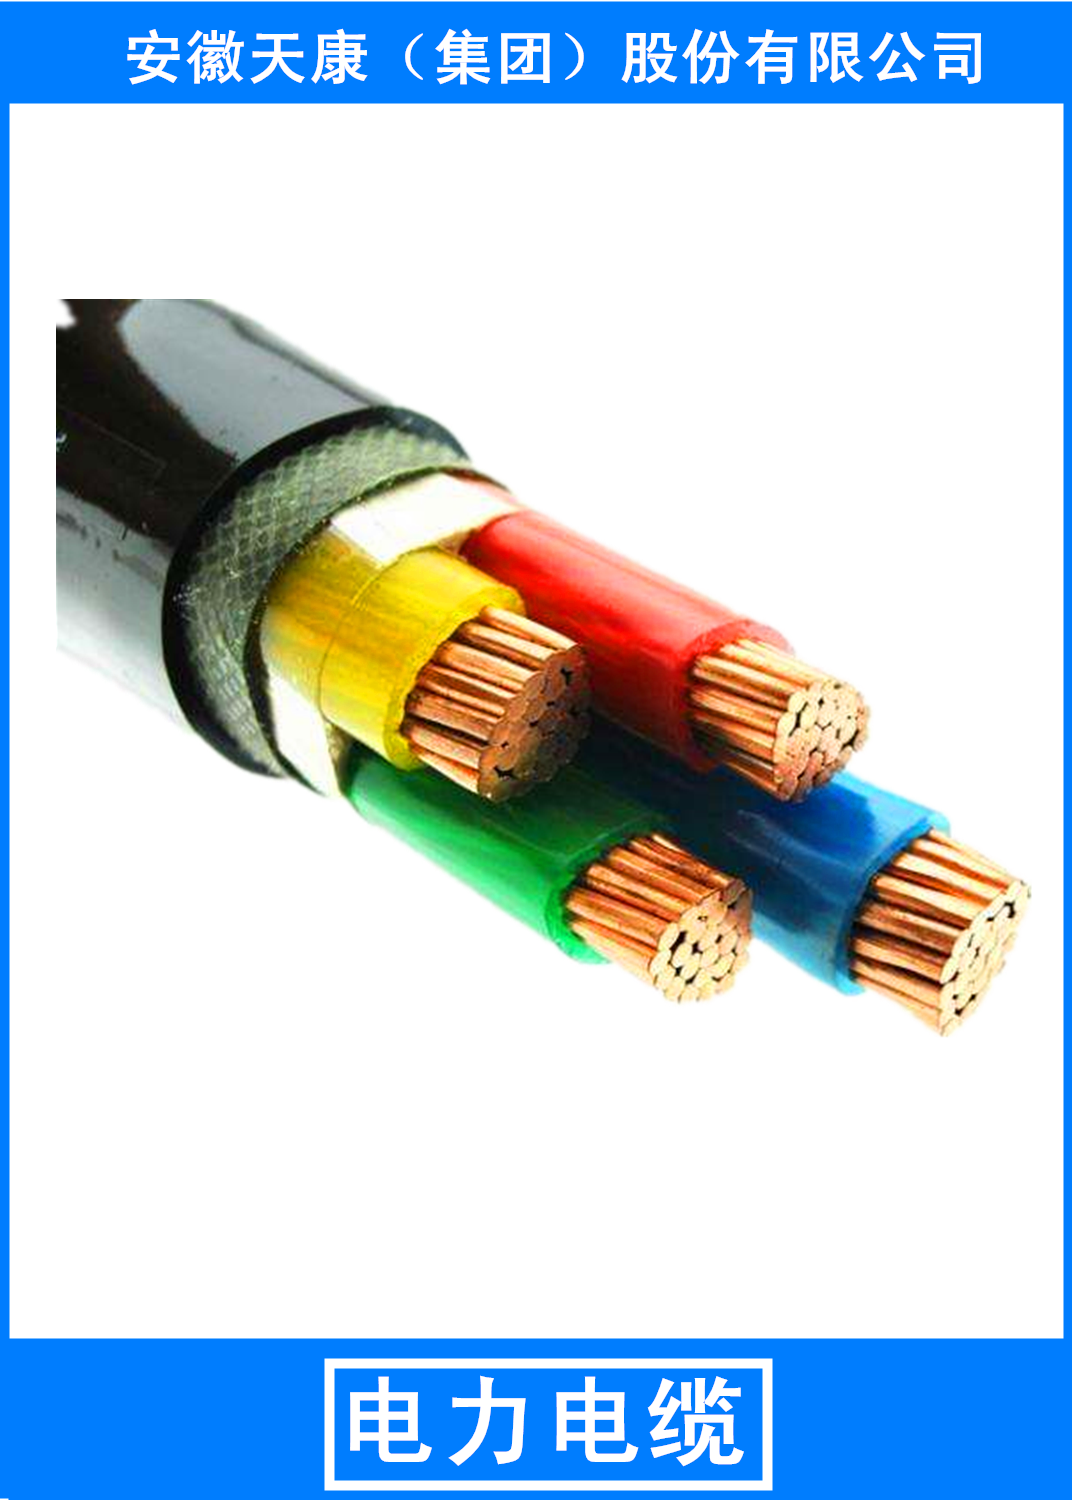 长期供应变频器专用电力电缆厂家，天康变频器专用电力电缆厂家，变频器专用电力电缆报价/价格